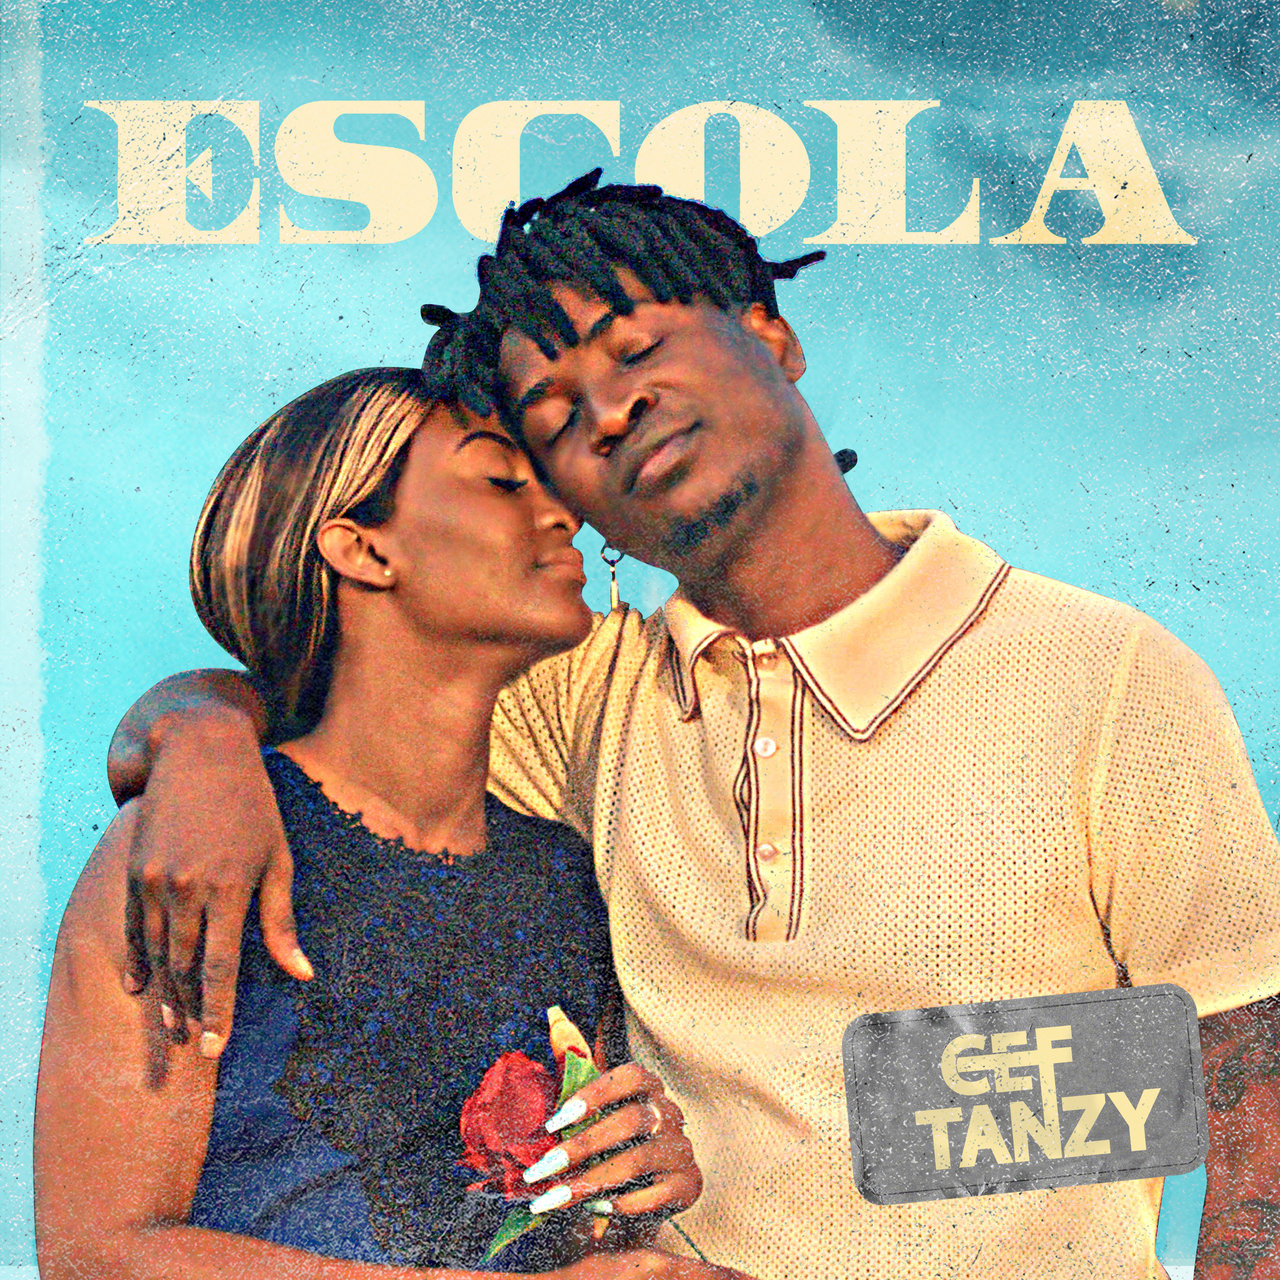 Cef Tanzy - Escola (Cover)